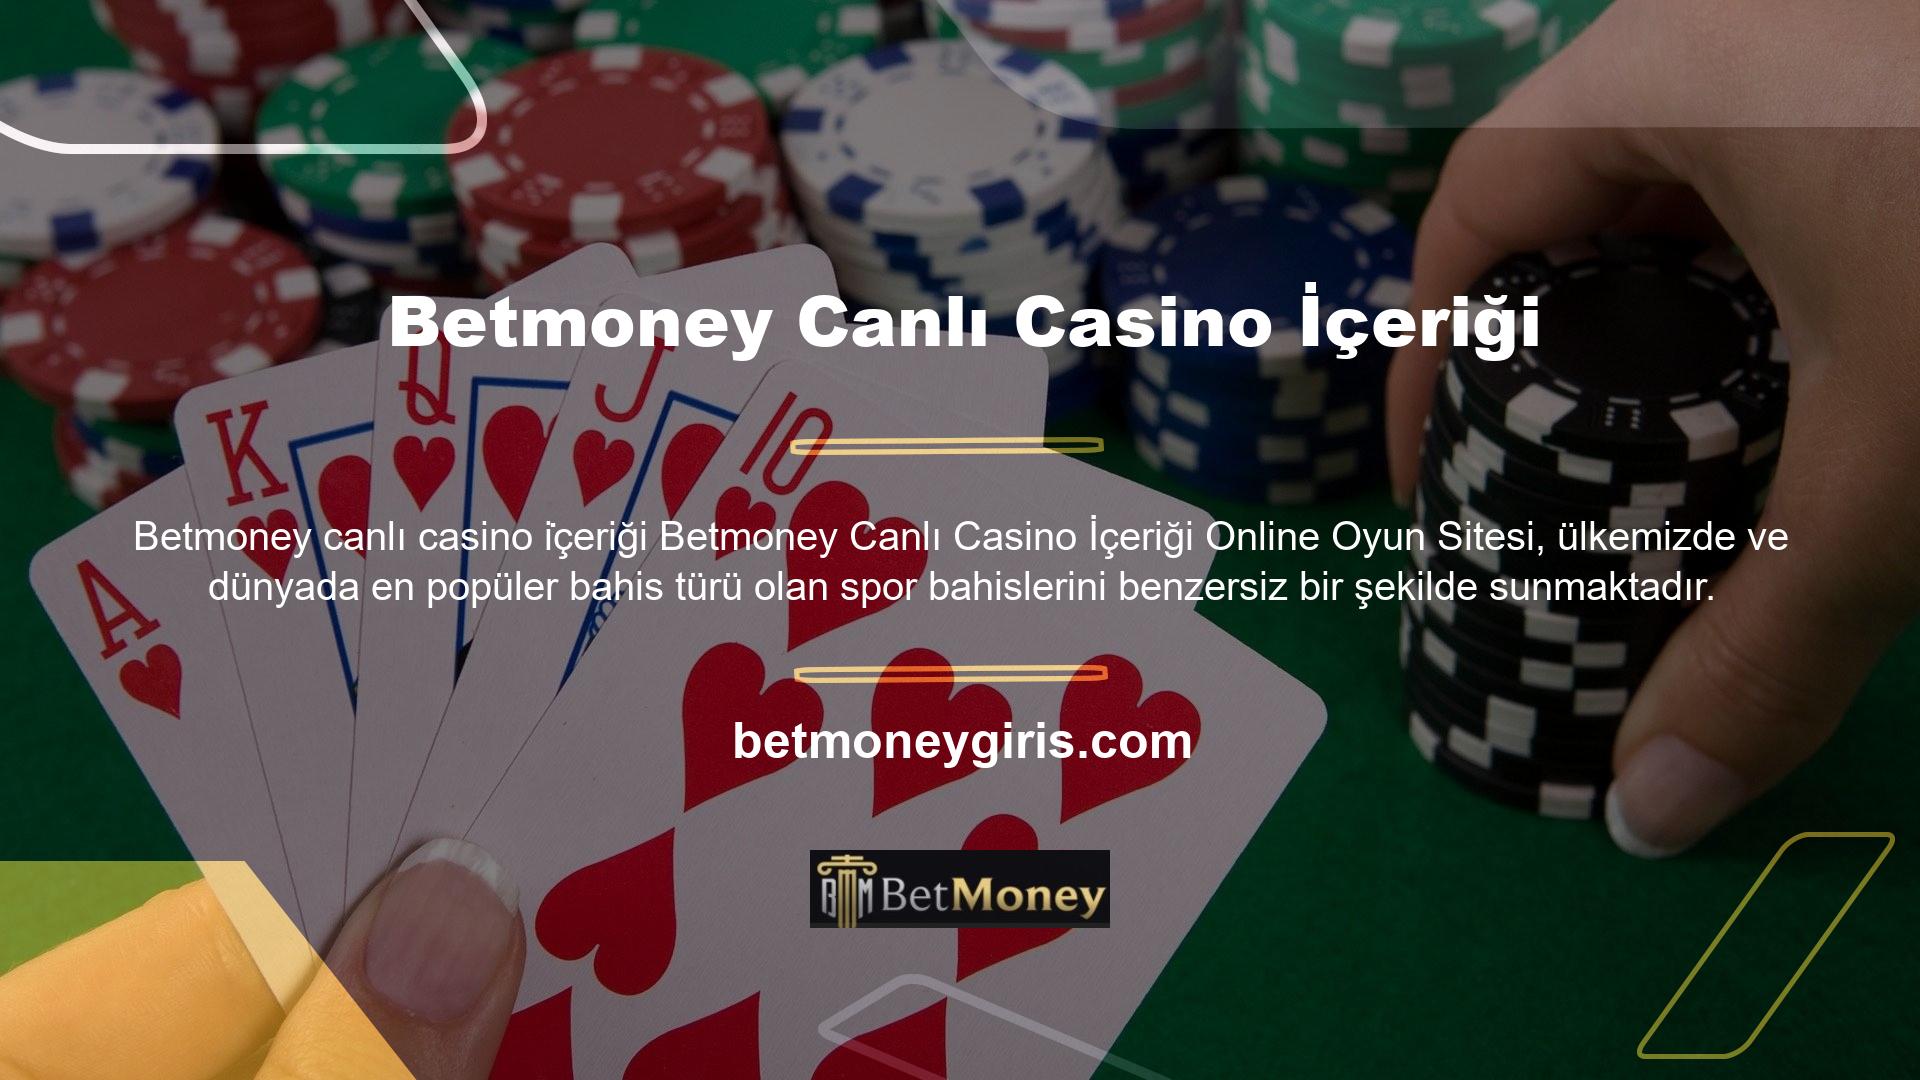 Betmoney tarafından sunulan spor bahisleri hizmetinin yanı sıra, canlı casino hizmeti rakipsizdir